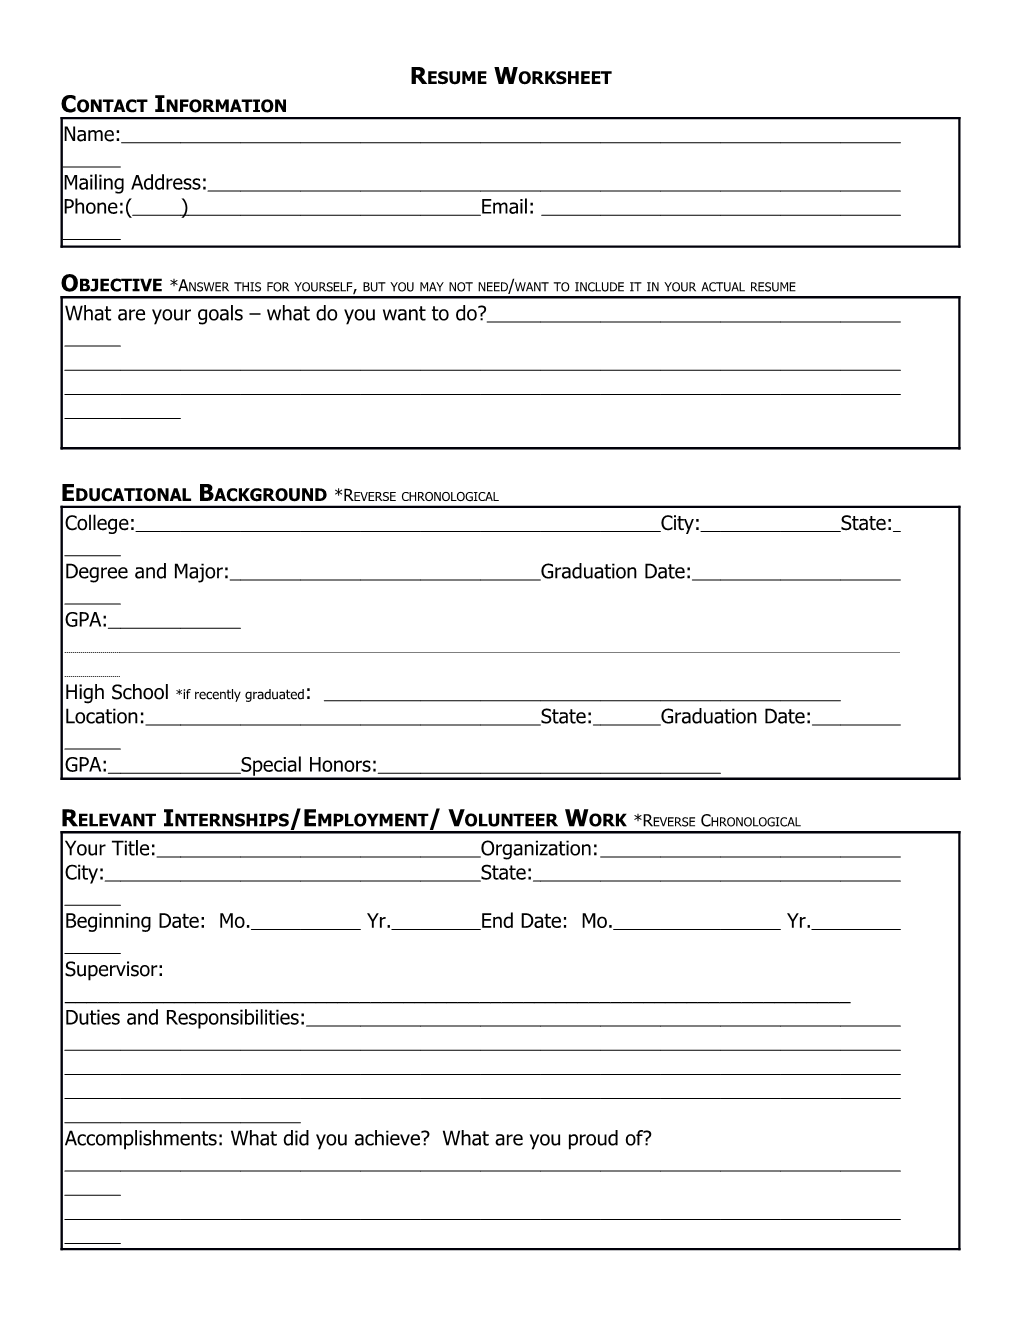 Resume Worksheet